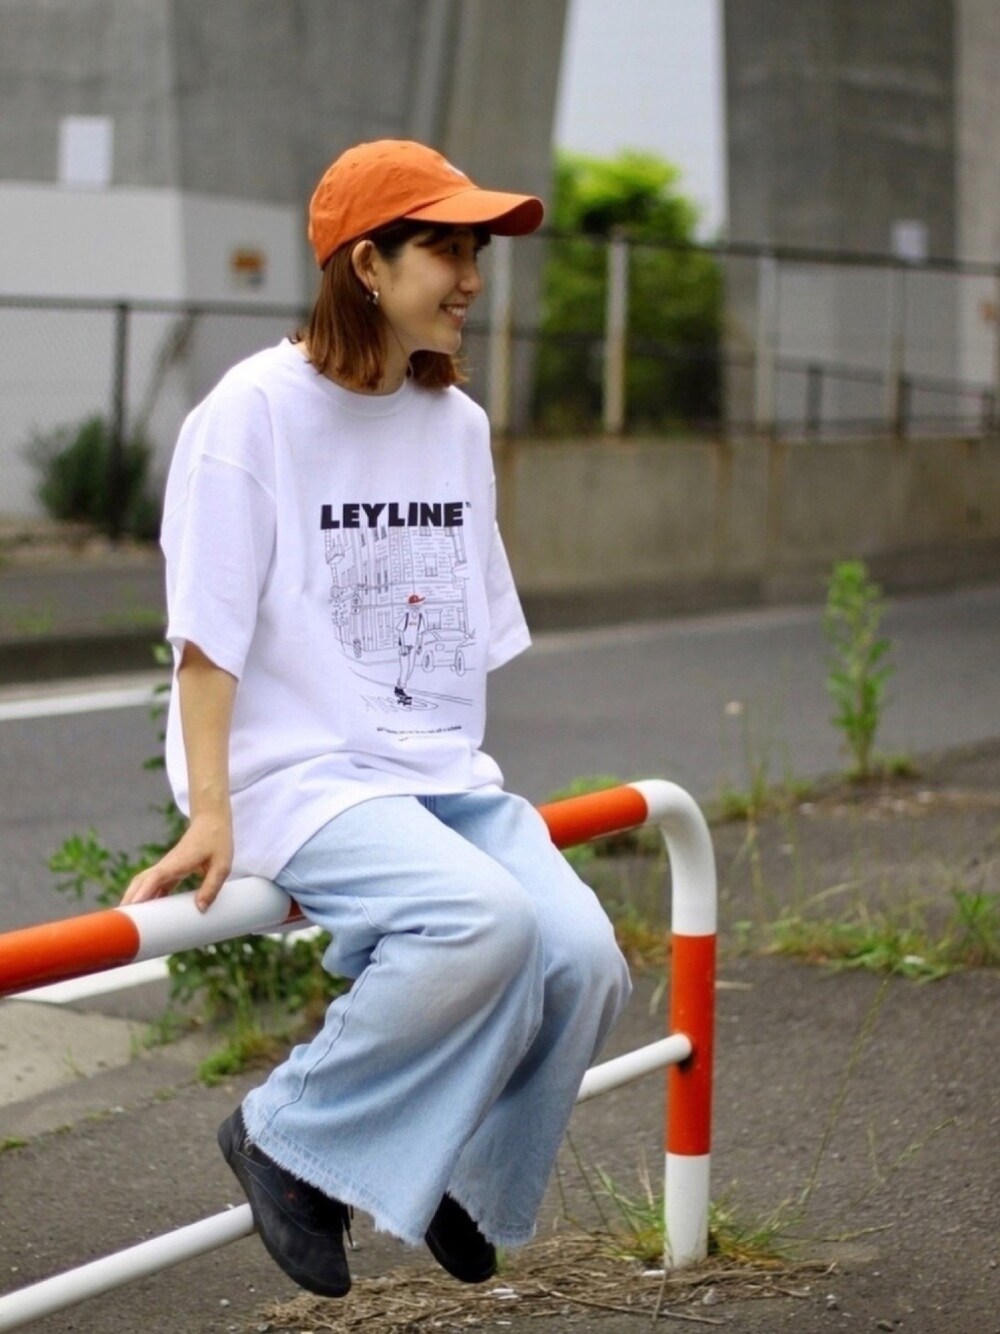 【BANKSY】新品 プリント ホワイト Tシャツ ストリート コーディネート